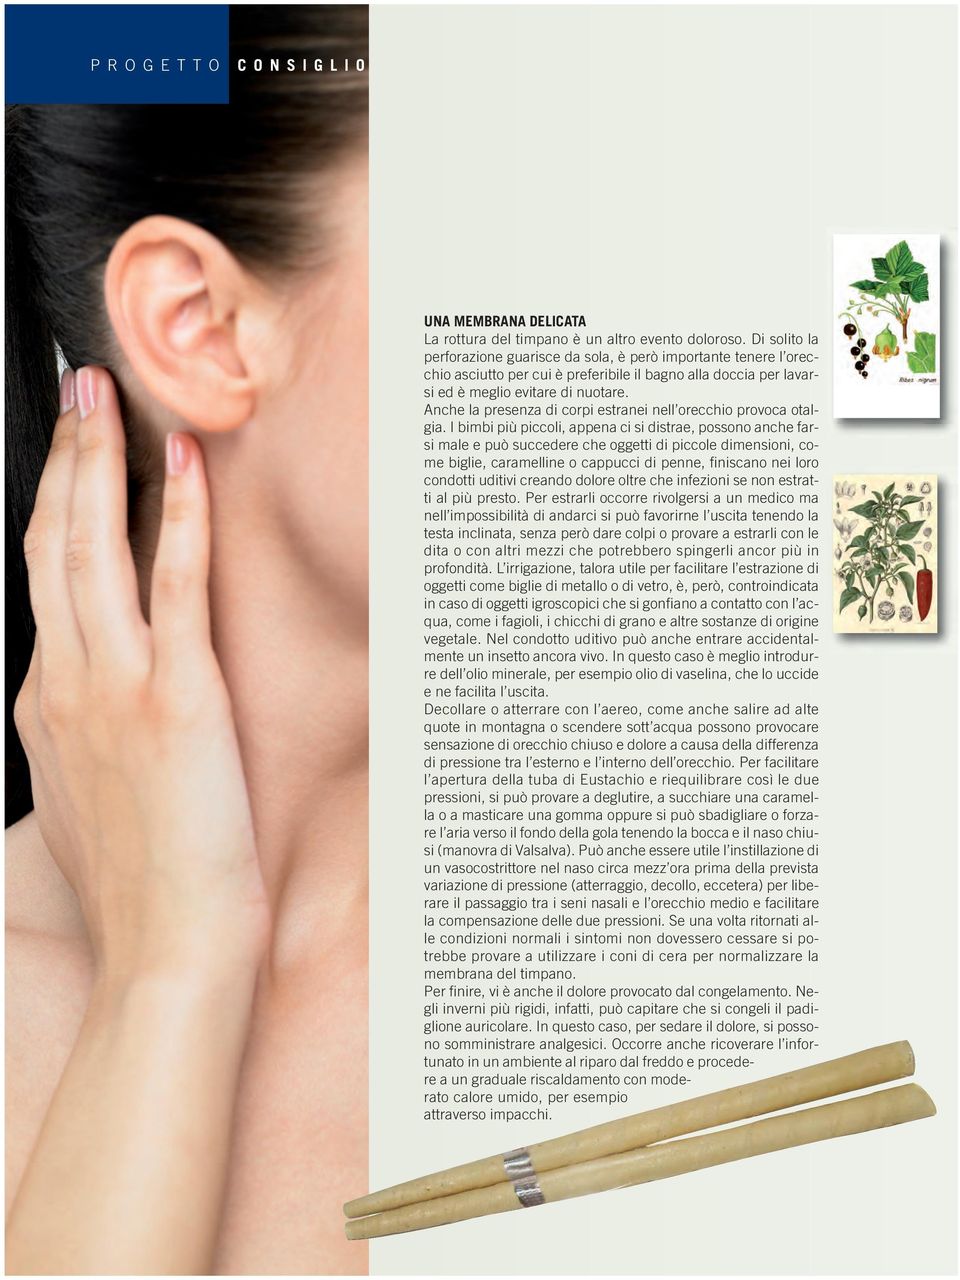 Anche la presenza di corpi estranei nell orecchio provoca otalgia.